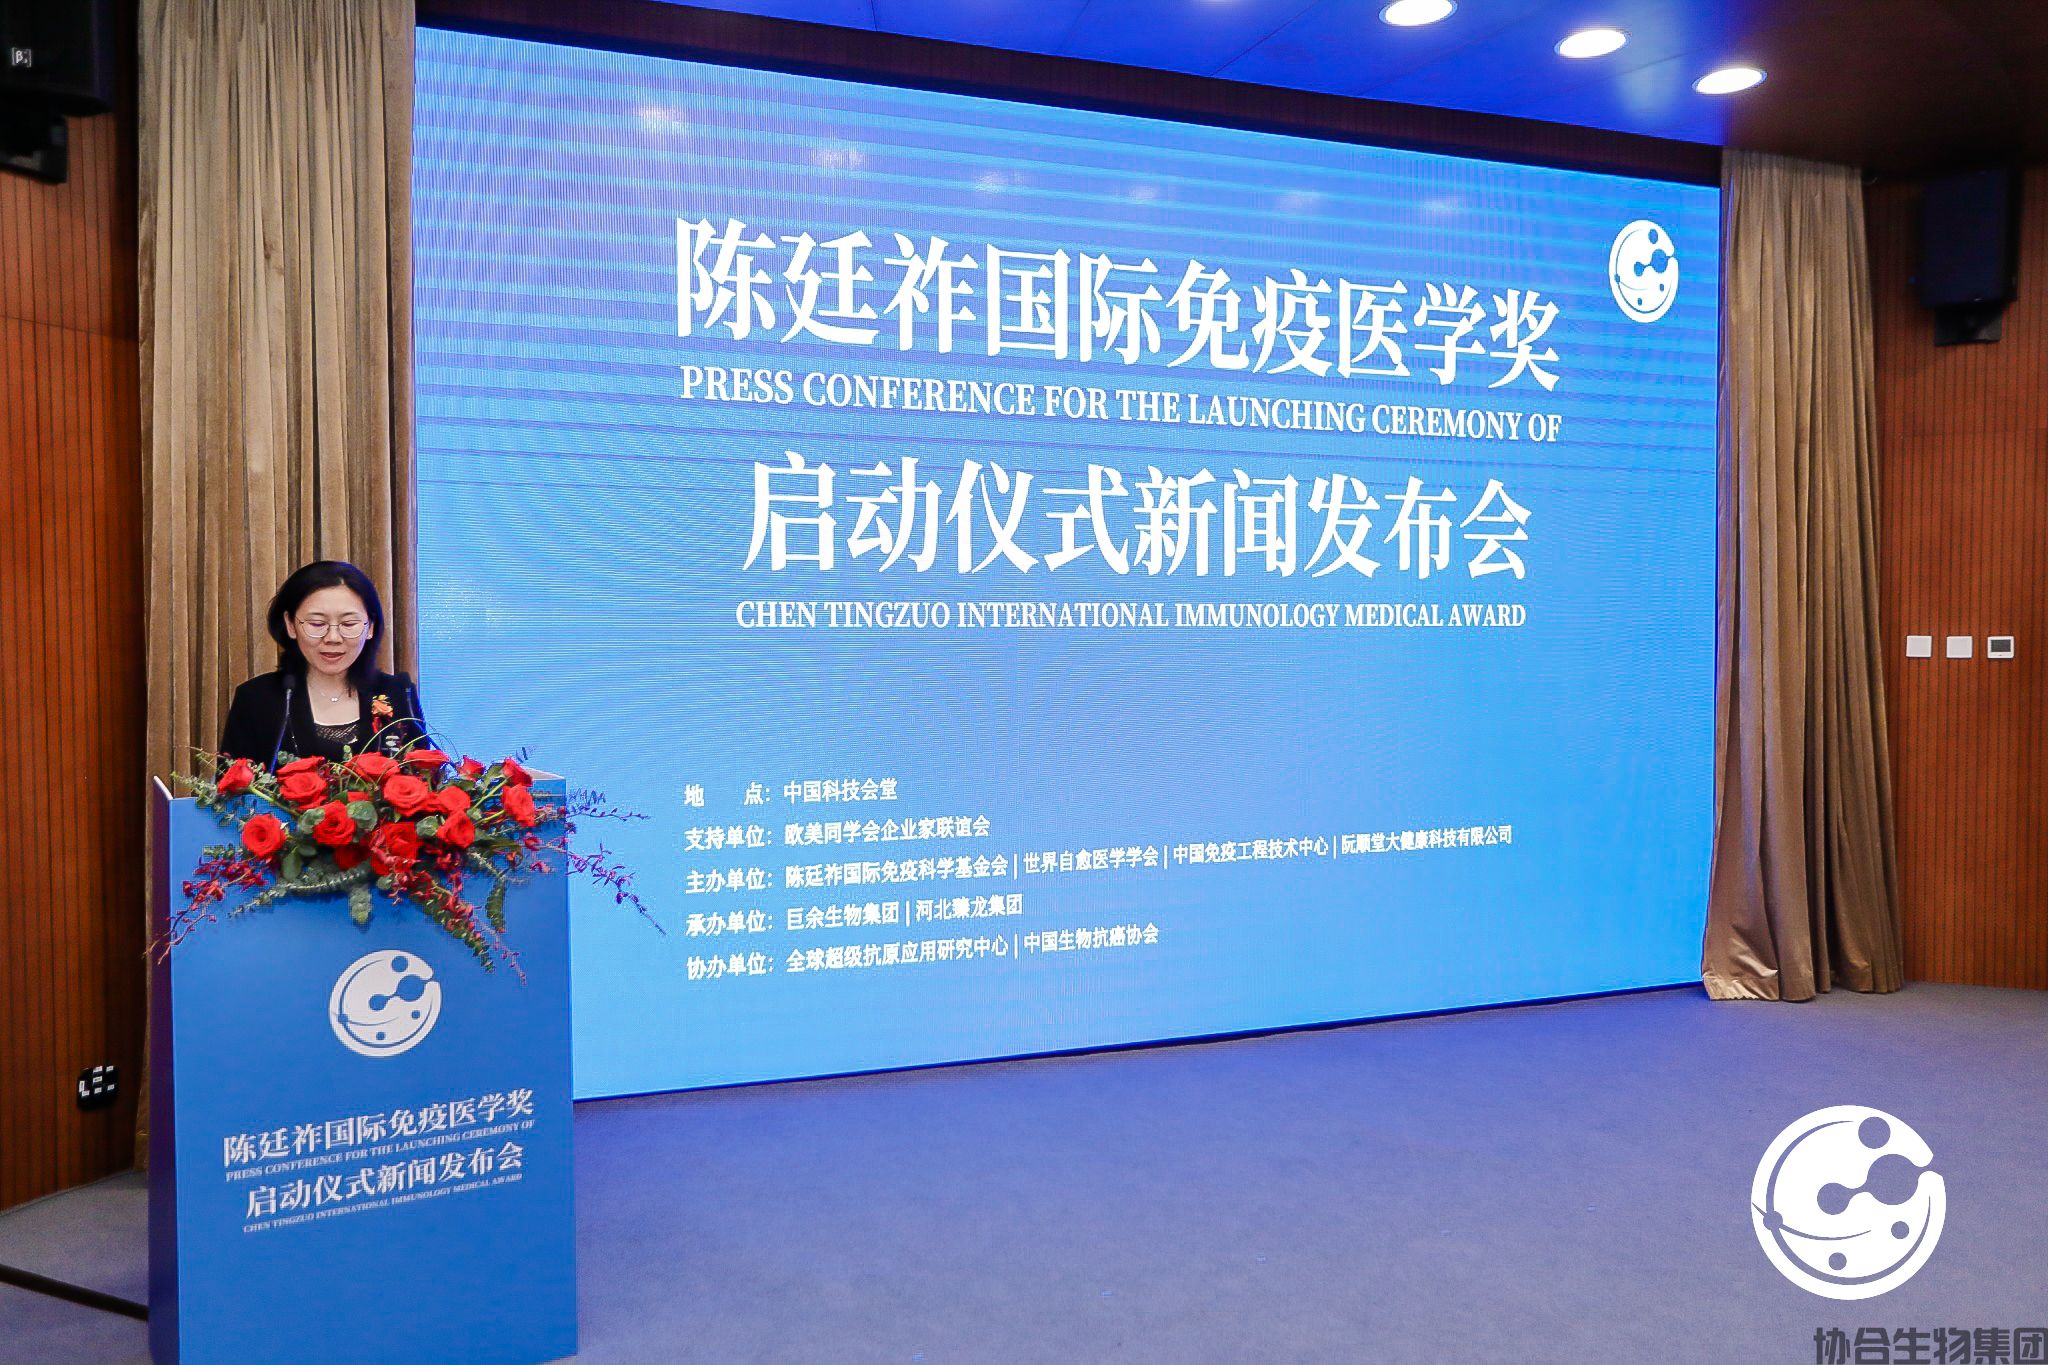 图为陈廷祚国际免疫科学基金会秘书长陈彦竹宣读北京宣言